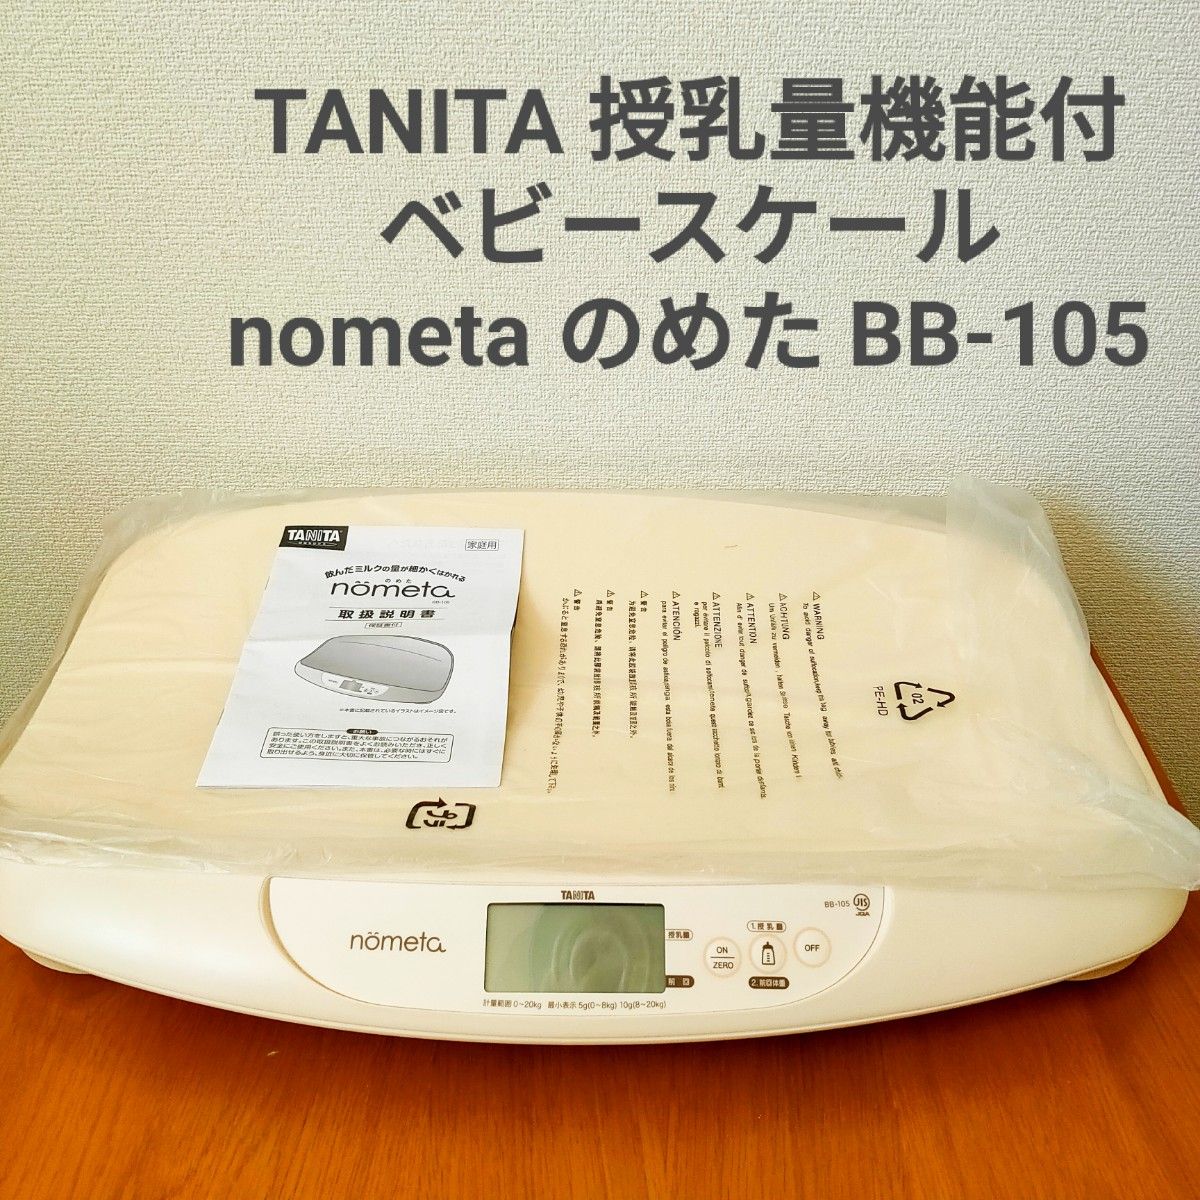 TANITA 授乳量機能付 ベビースケール nometa のめた BB-105